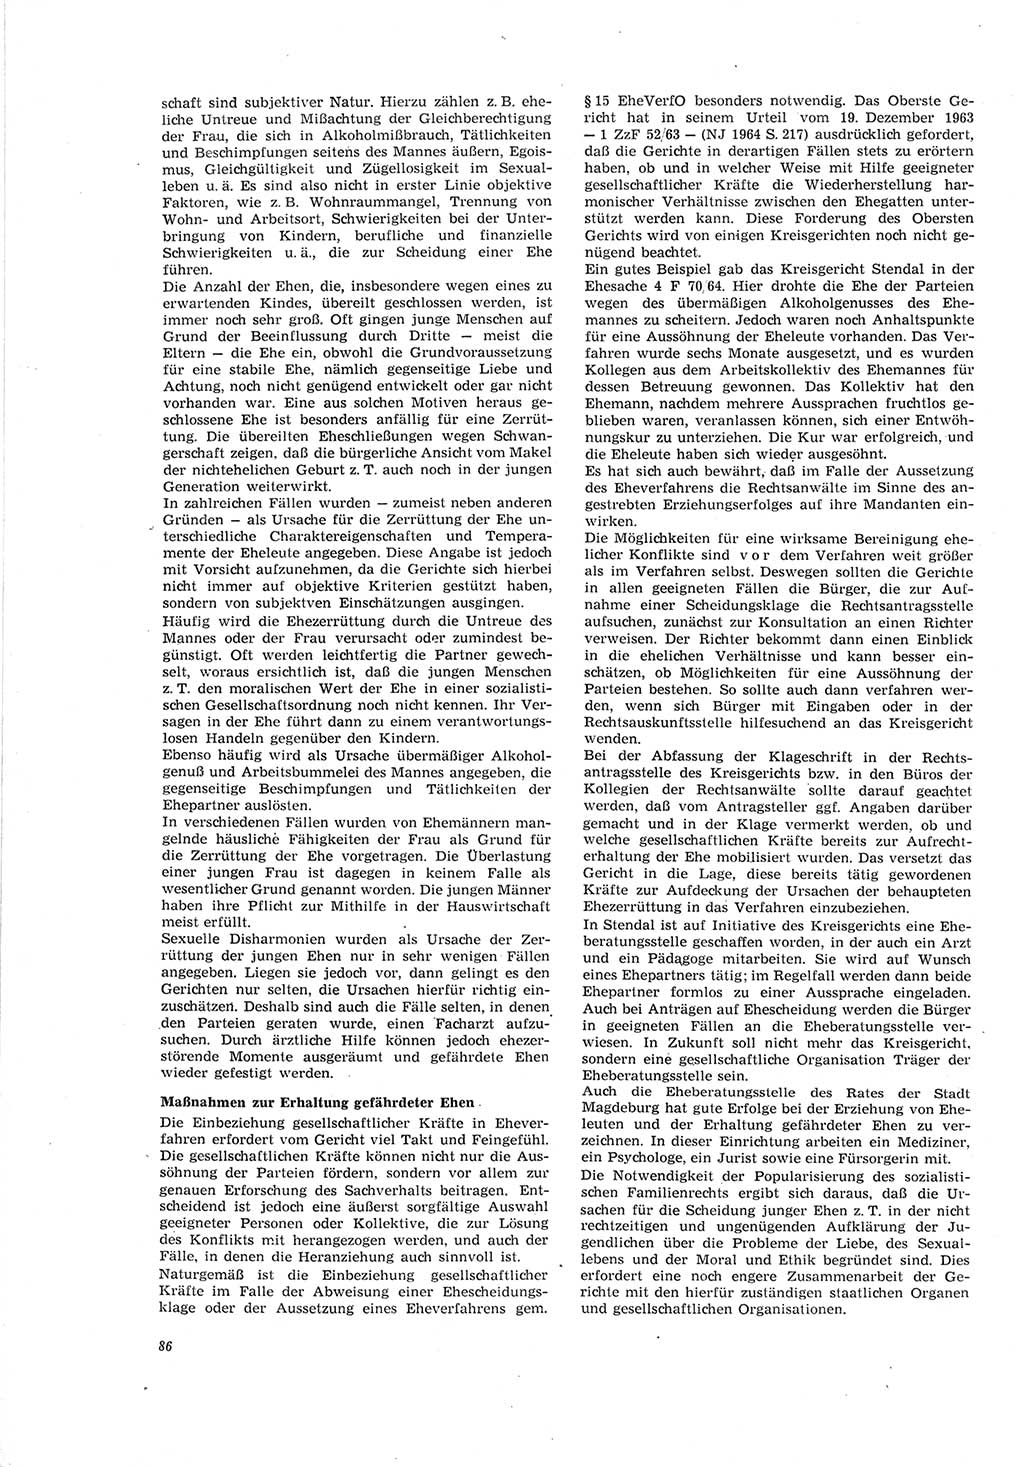 Neue Justiz (NJ), Zeitschrift für Recht und Rechtswissenschaft [Deutsche Demokratische Republik (DDR)], 19. Jahrgang 1965, Seite 86 (NJ DDR 1965, S. 86)